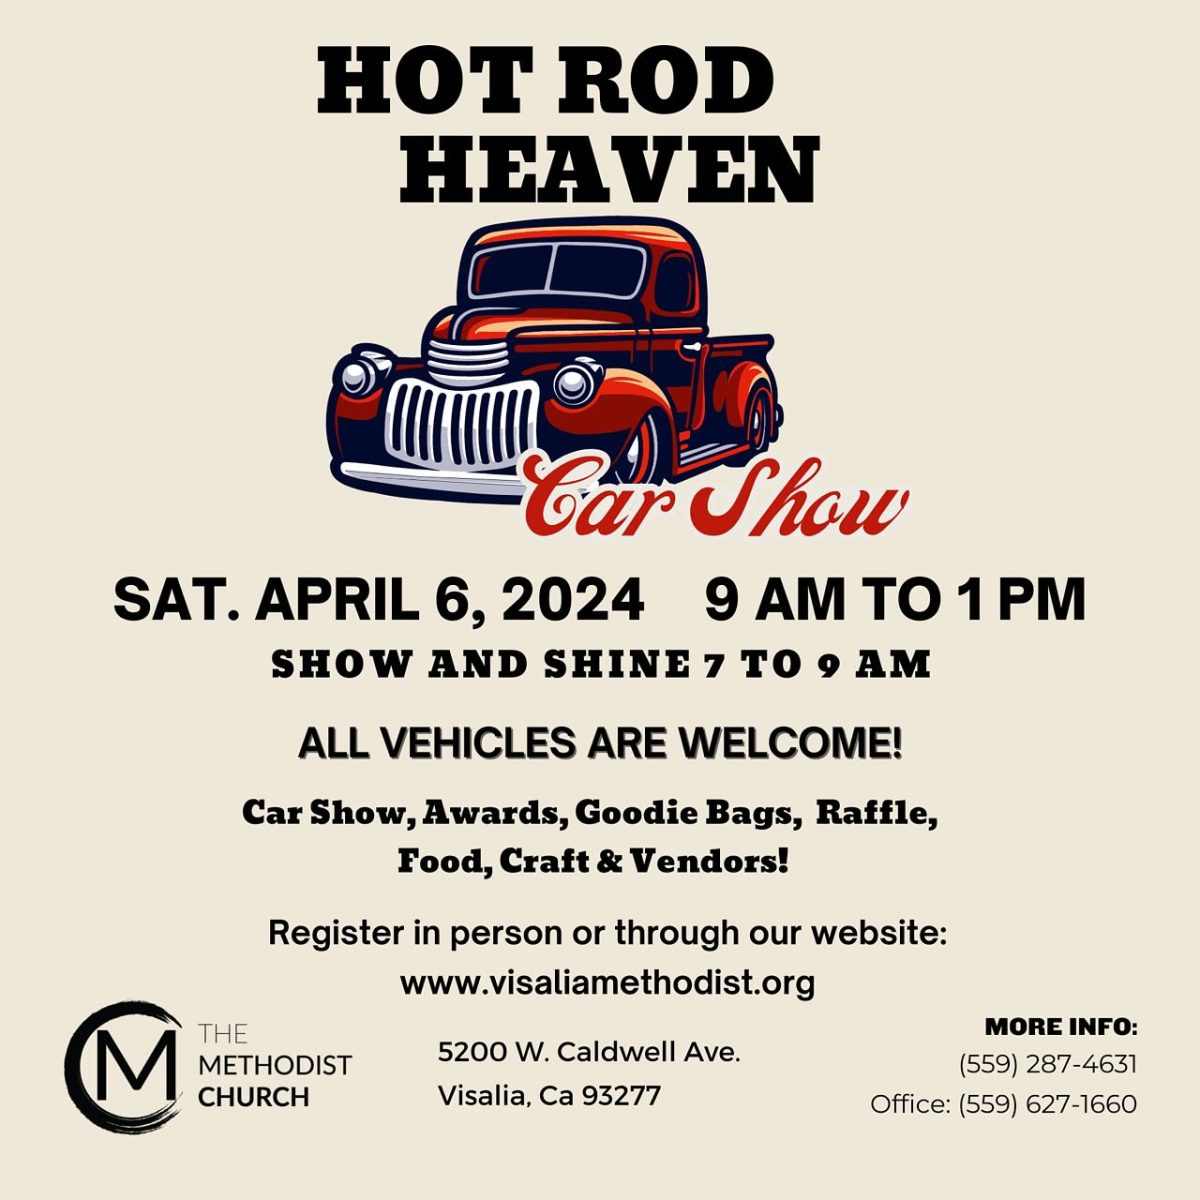 Hot Rod Heaven Car Show